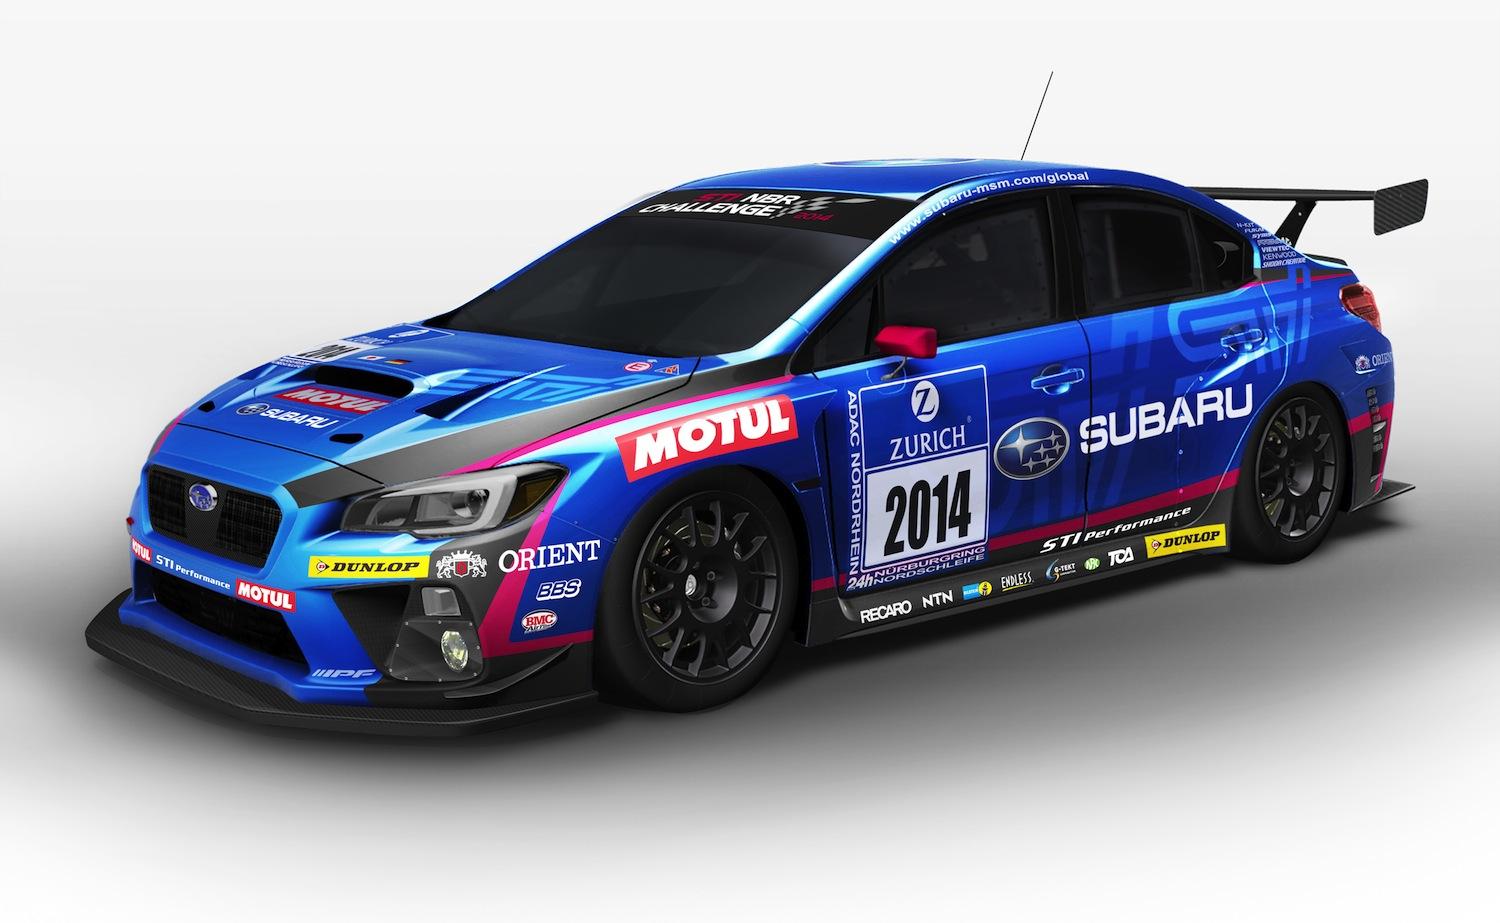 Subaru-WRX-STI-nurburgring.jpg